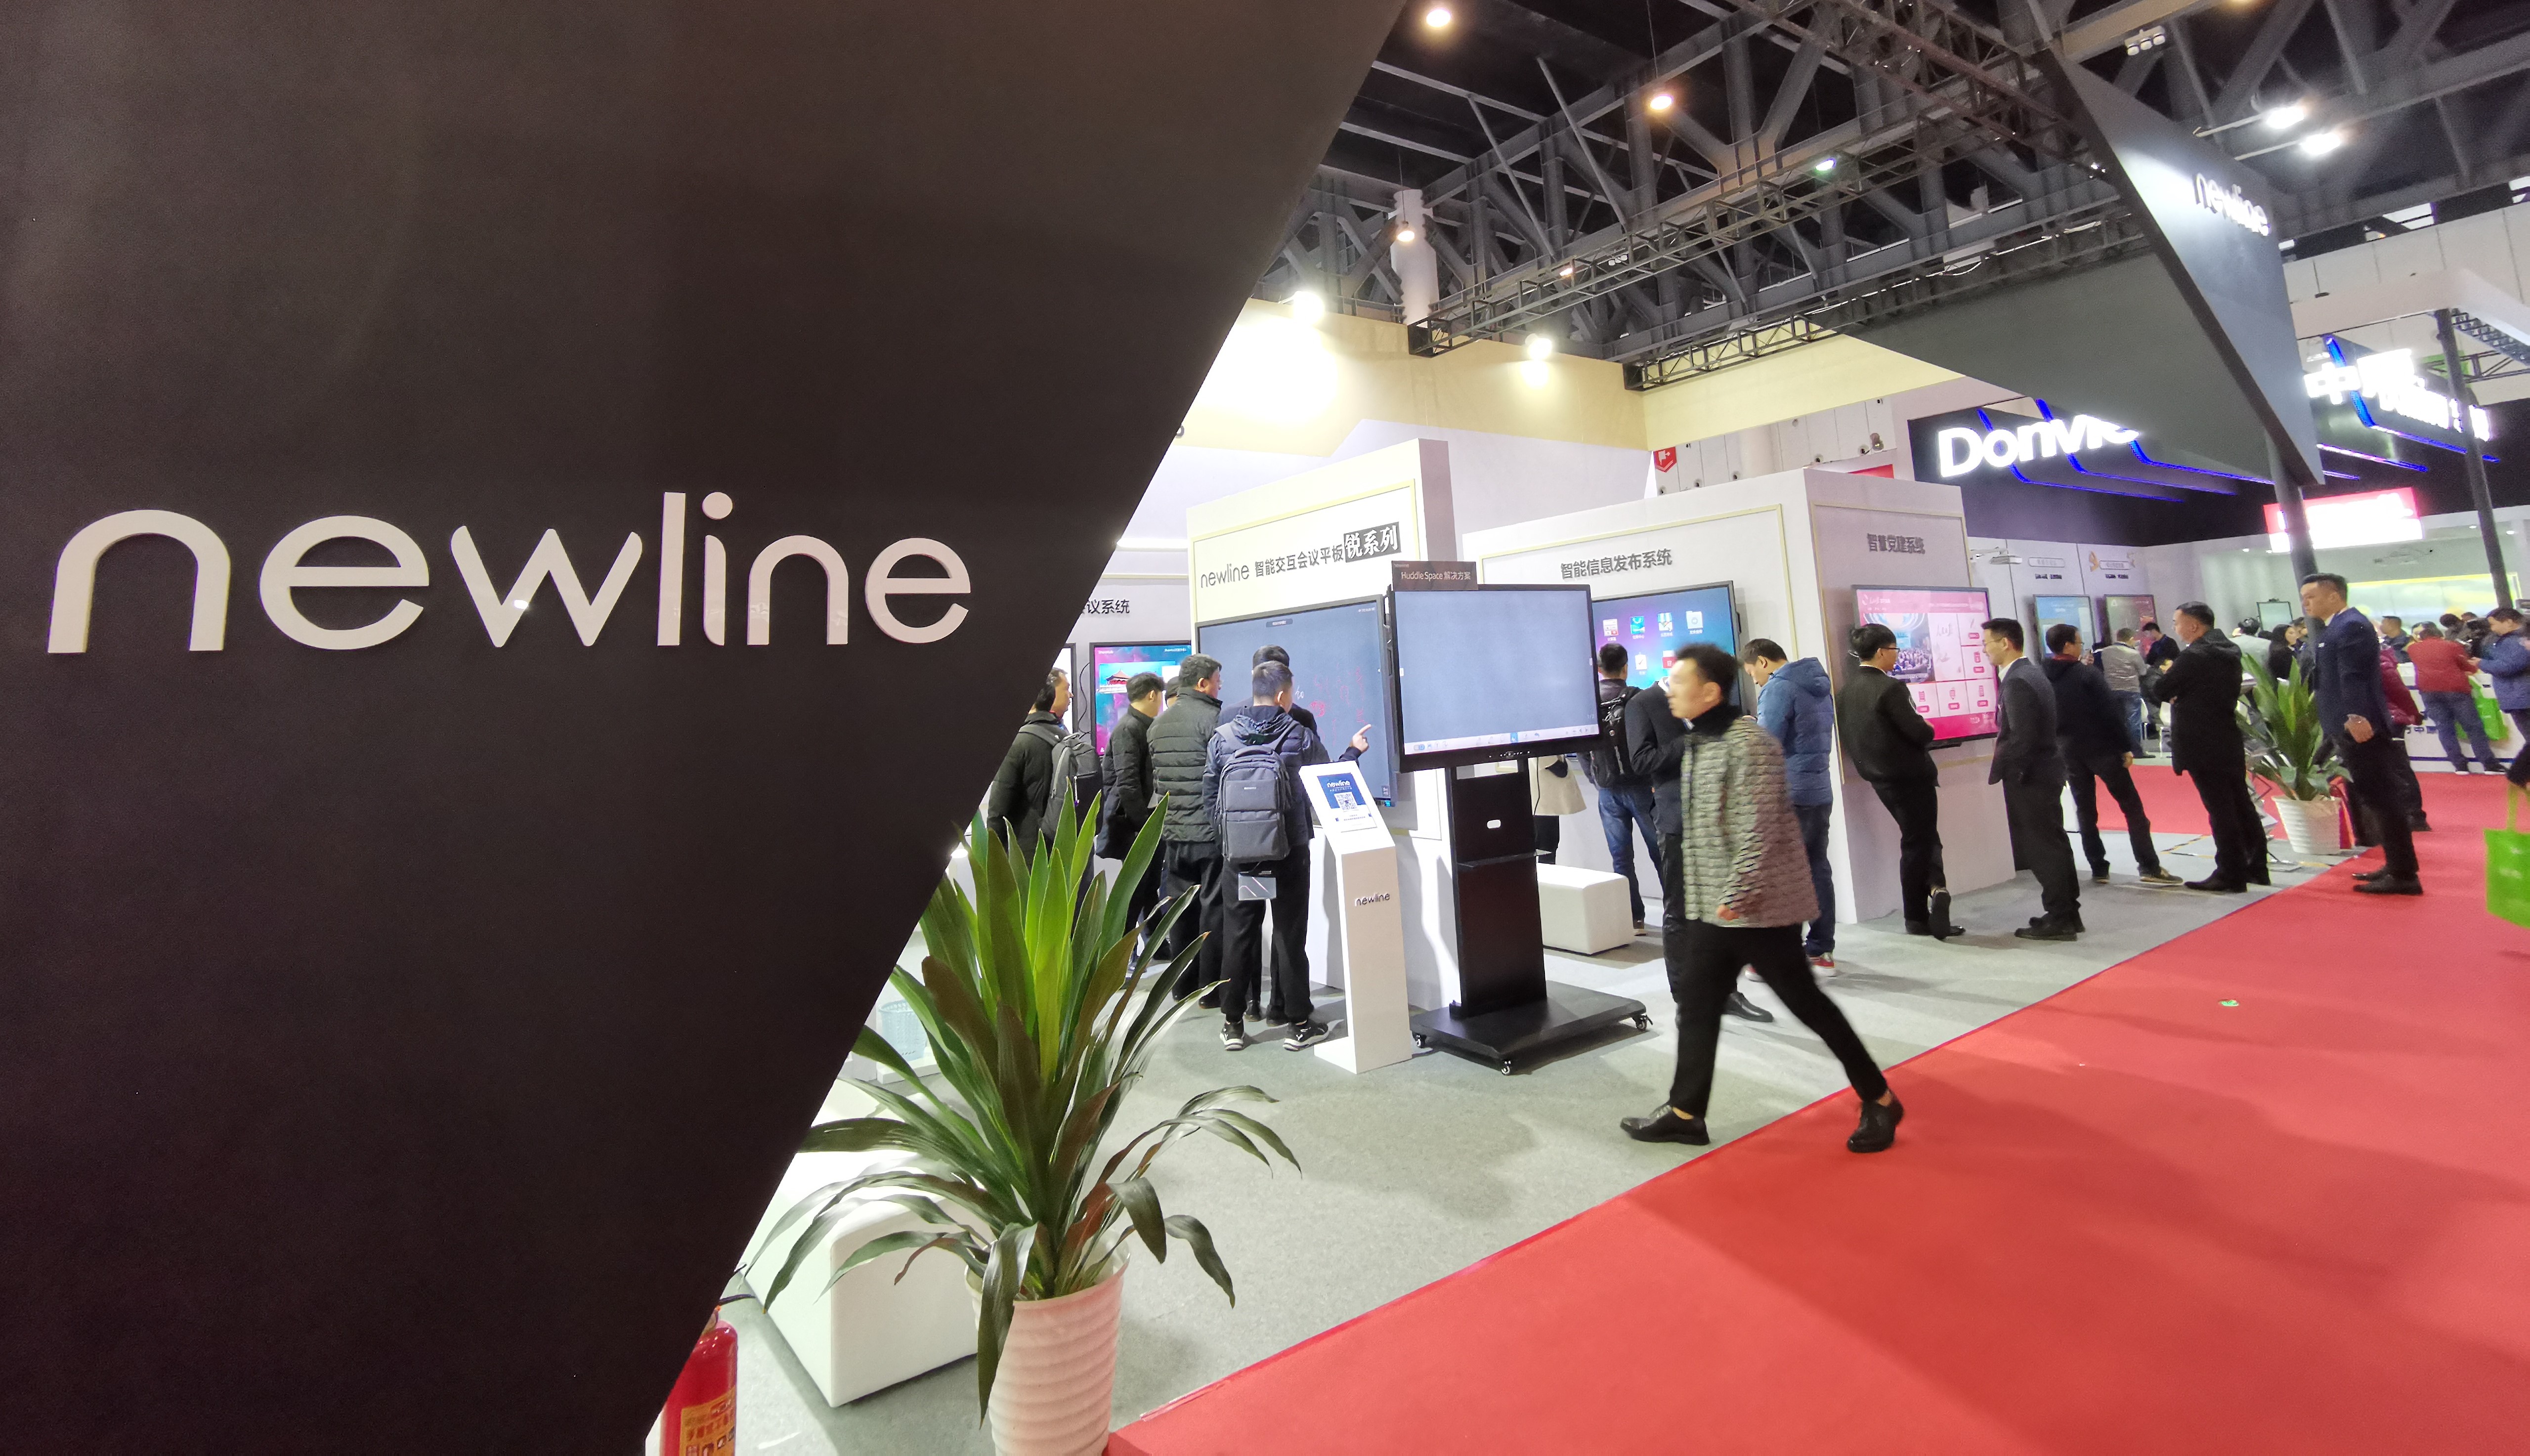 newline亮相成都2019年中国现代办公行业协会年会 打造智慧办公新核心